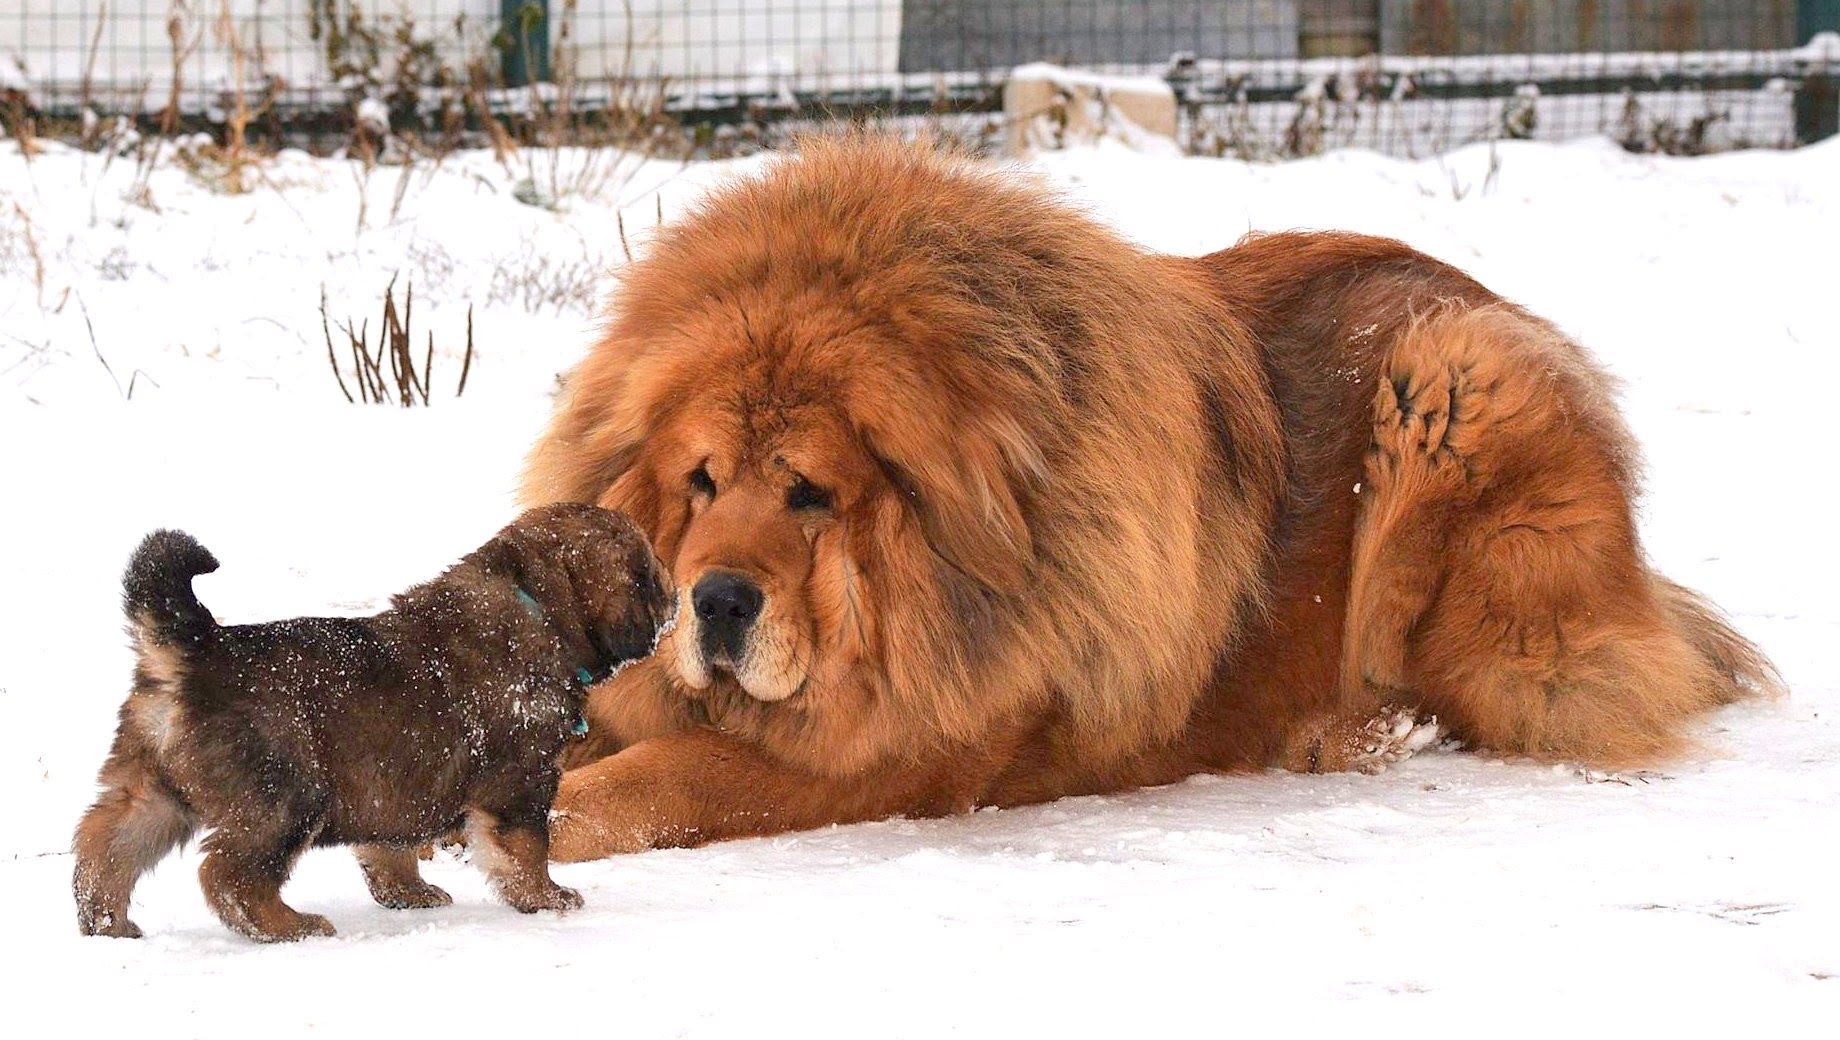 Tibetan Mastiff a Puppy